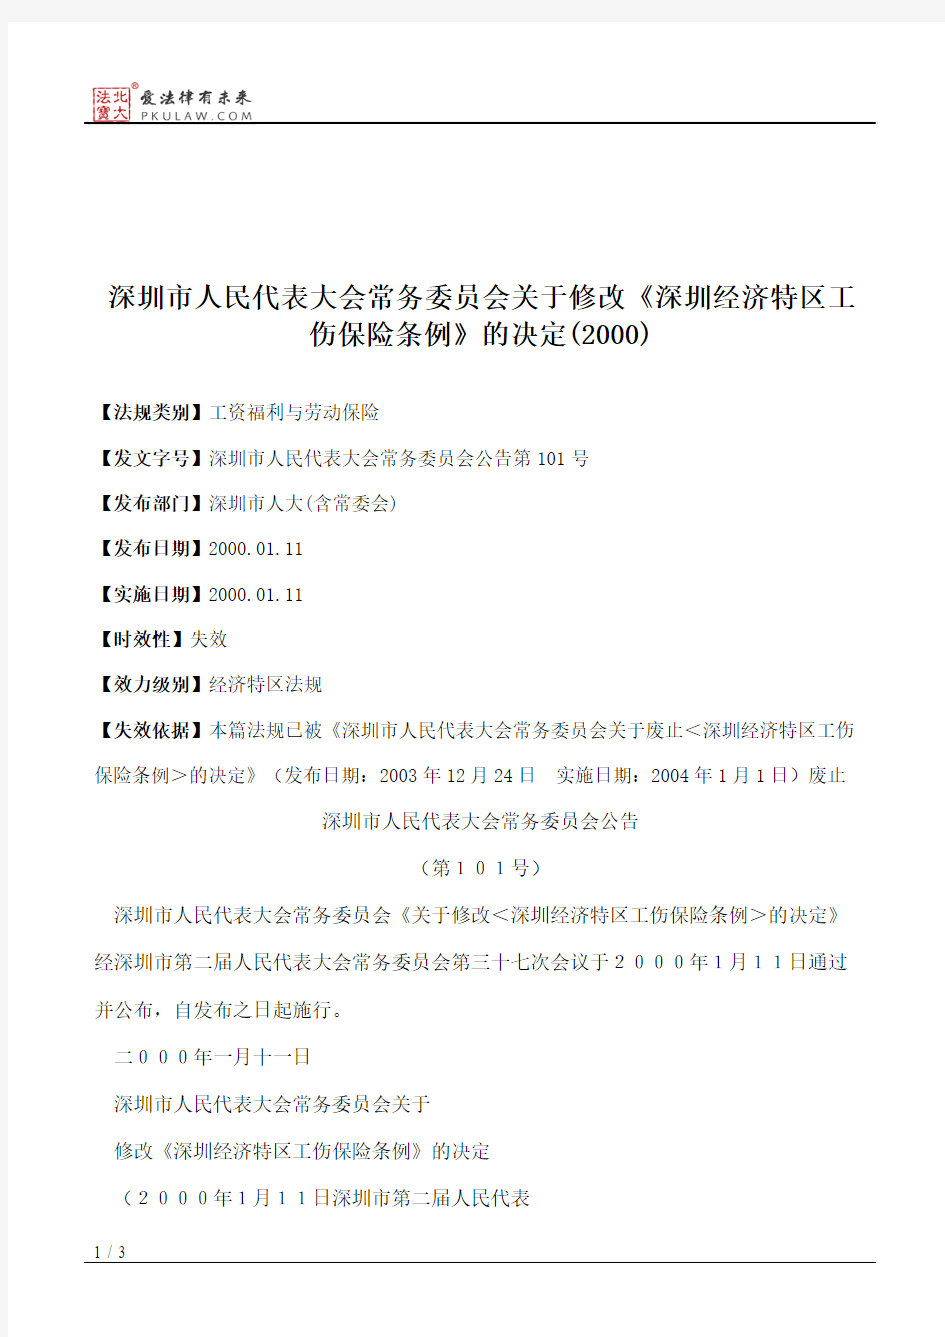 深圳市人大常委会关于修改《深圳经济特区工伤保险条例》的决定(2000)